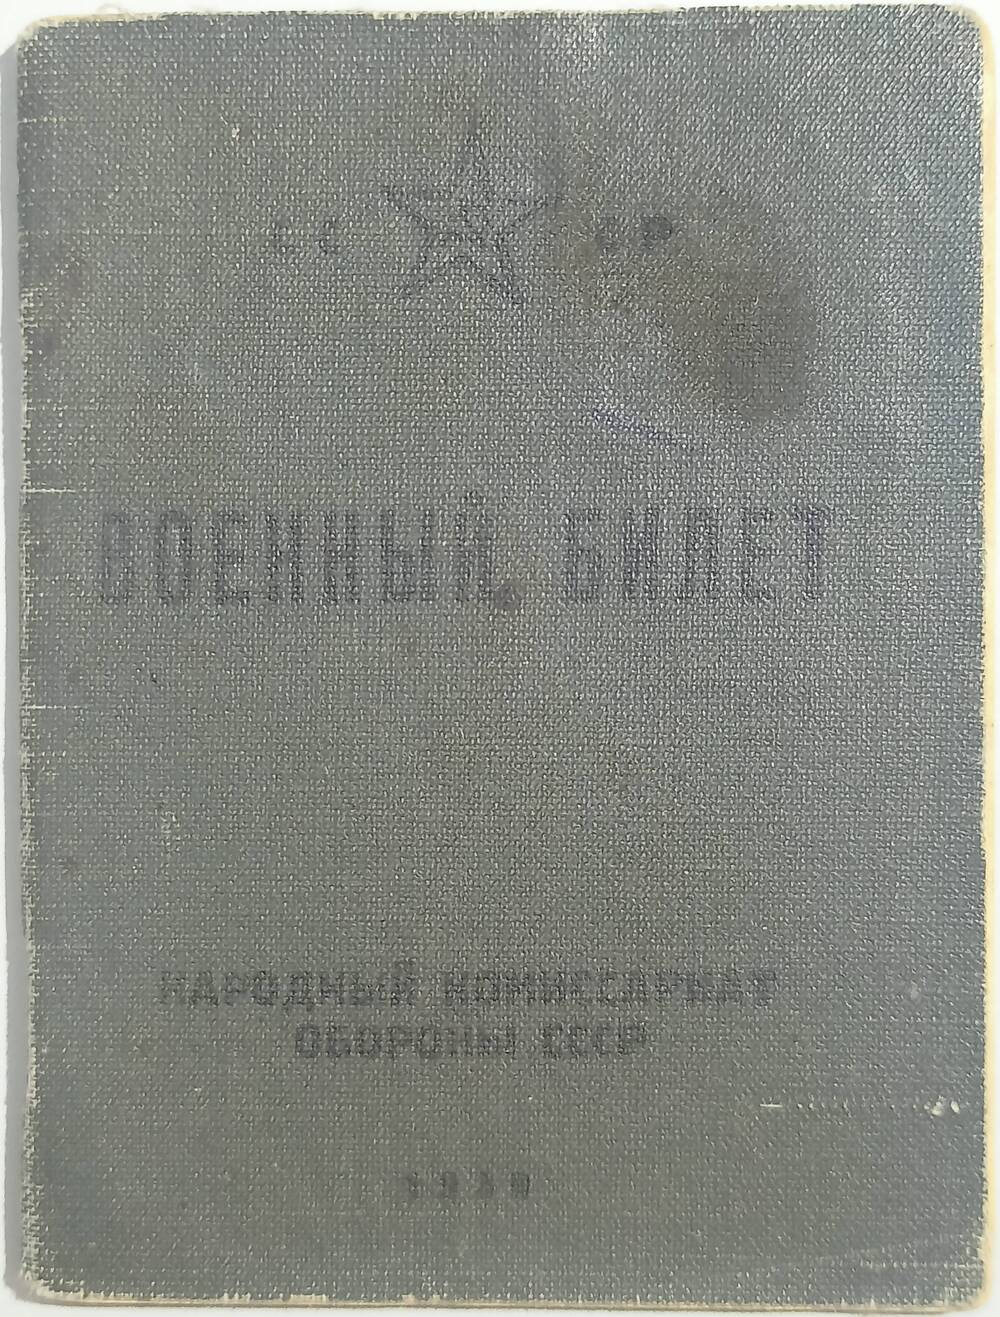 Военный билет Фомченко Я.А. 17.09.1940 г. (с фотокарточкой)